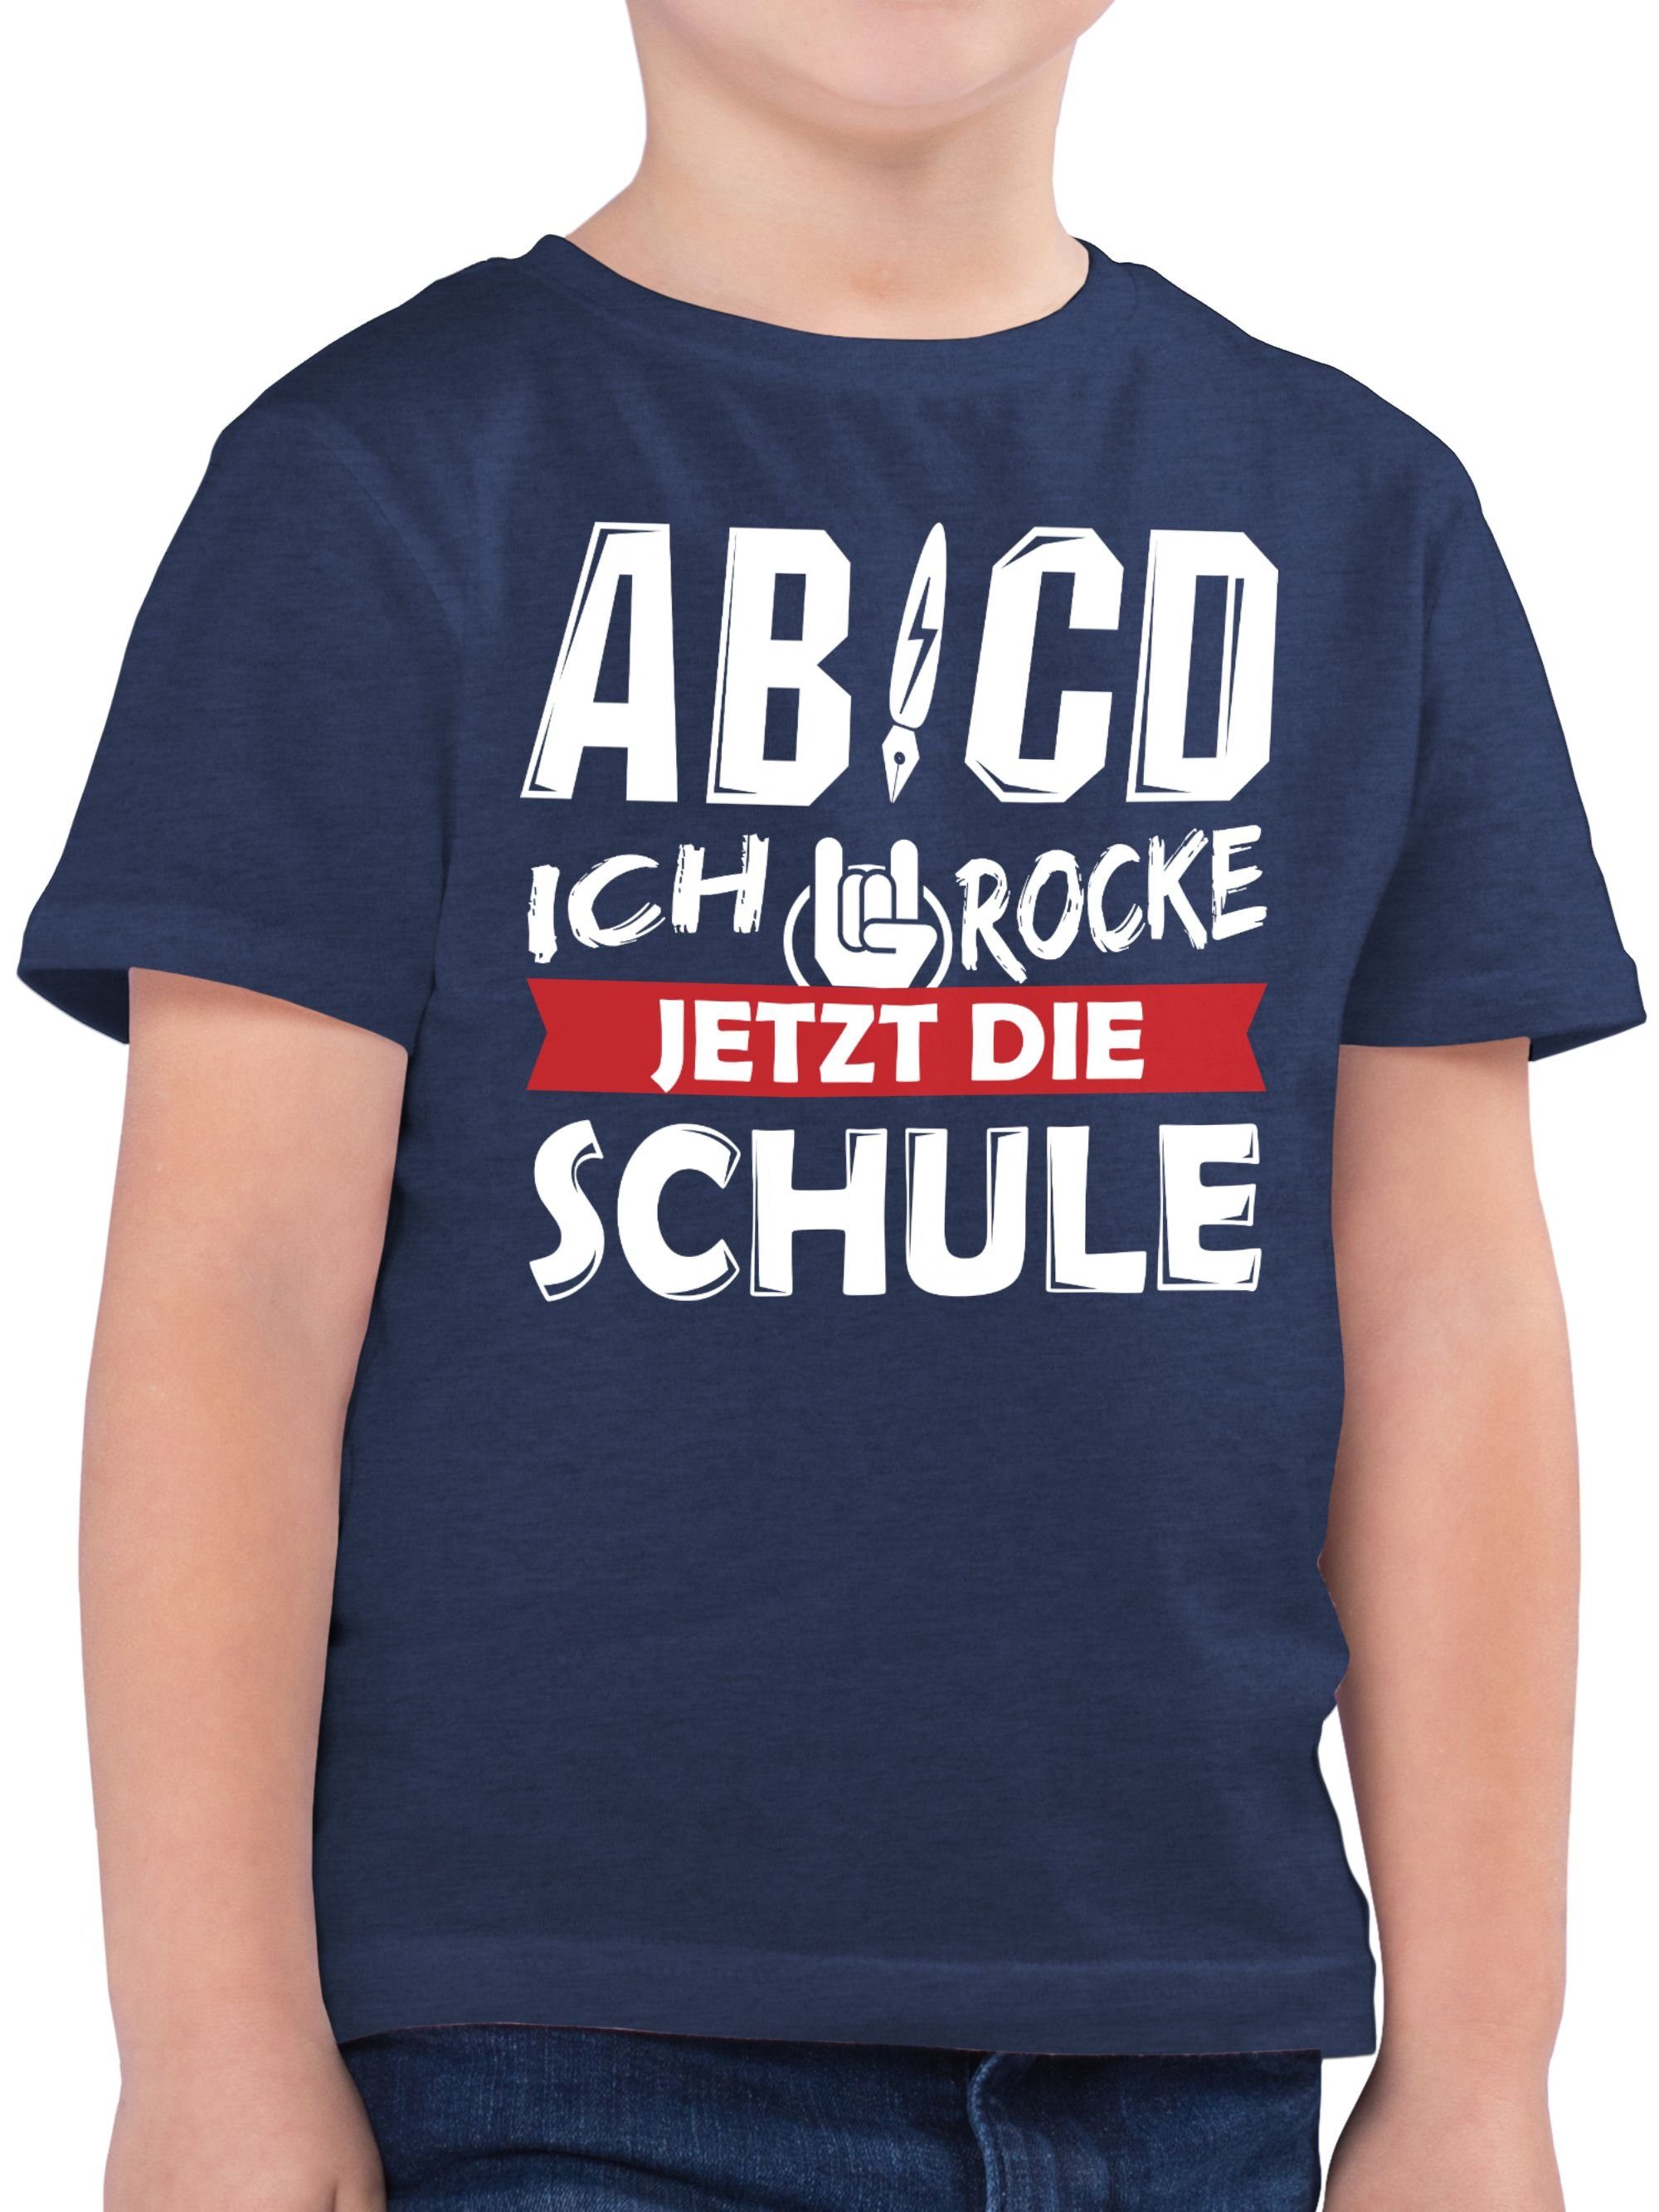 Shirtracer T-Shirt ABCD Ich Dunkelblau Junge rocke Geschenke Schulanfang Schule 3 Meliert jetzt die Einschulung